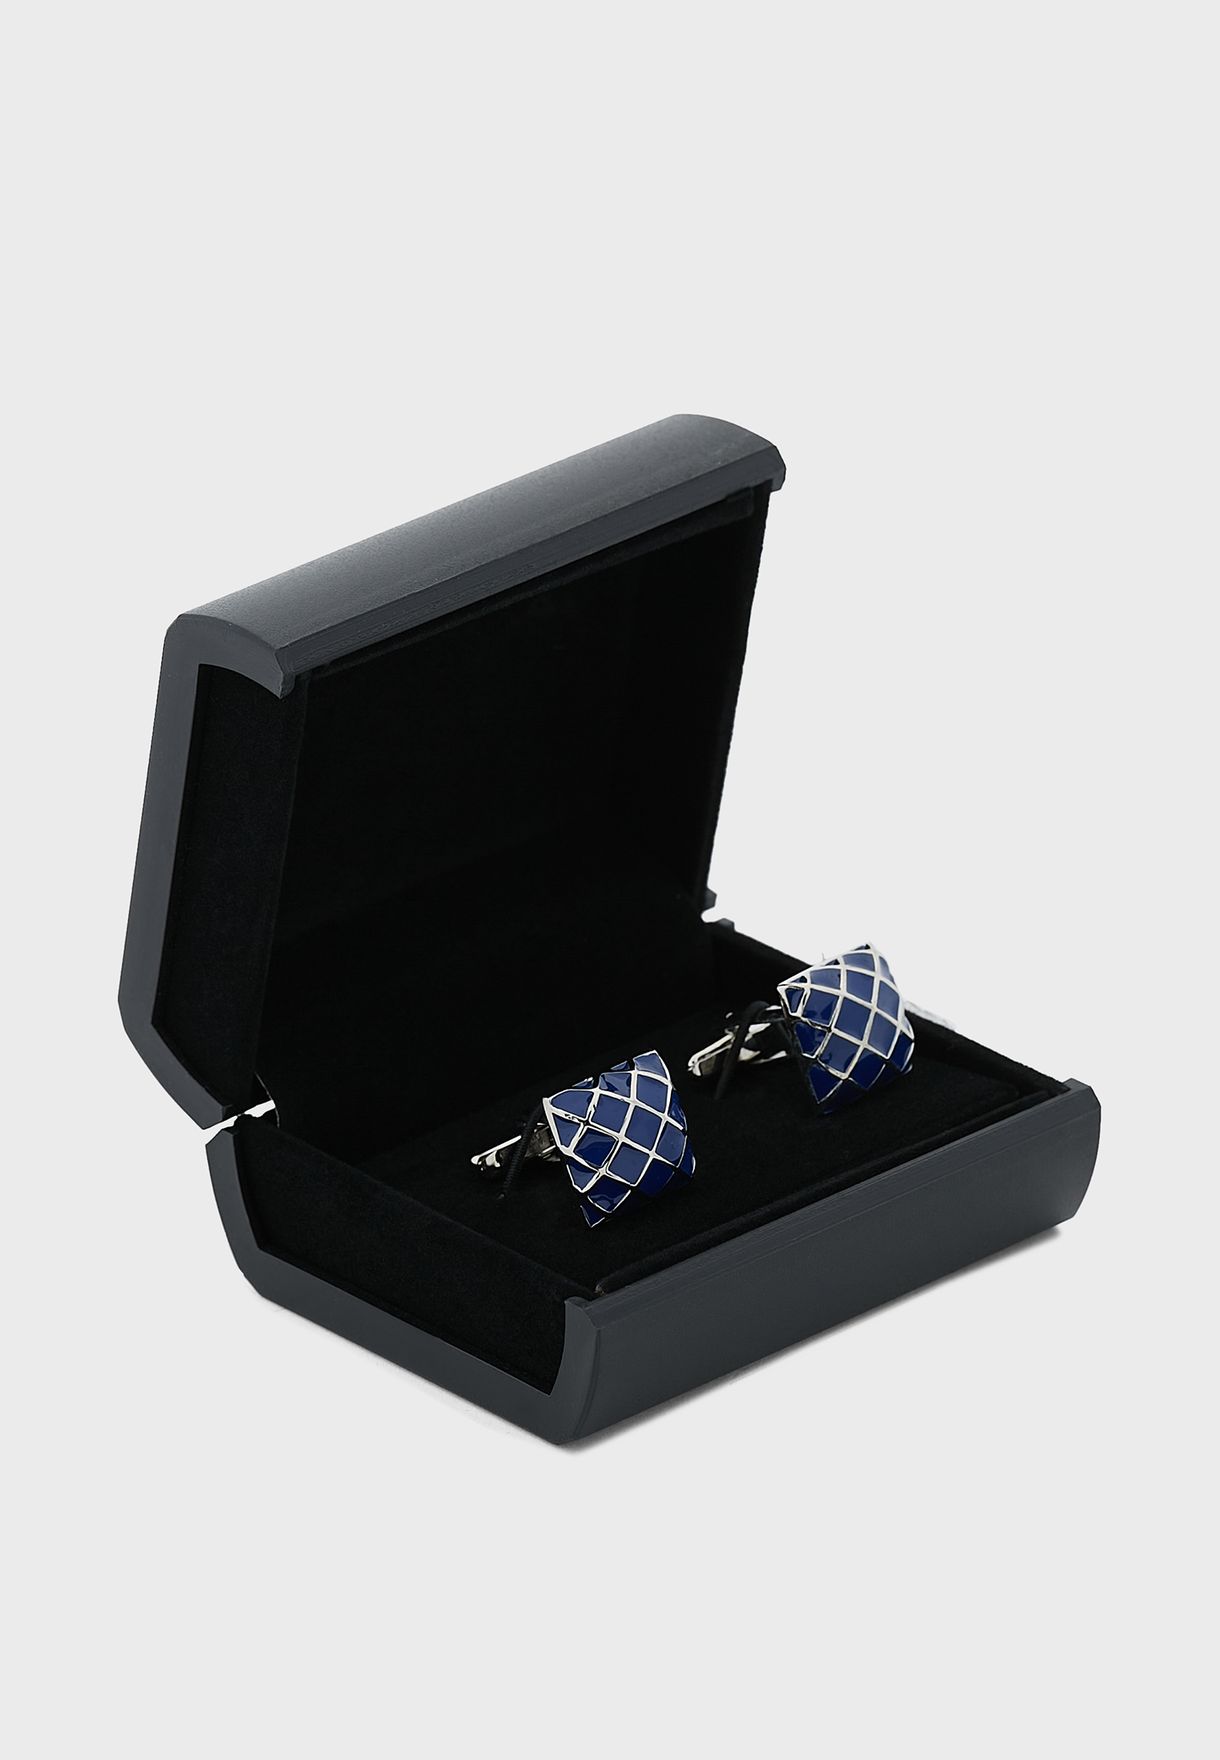 Geometric Design Cufflink In Gift Box